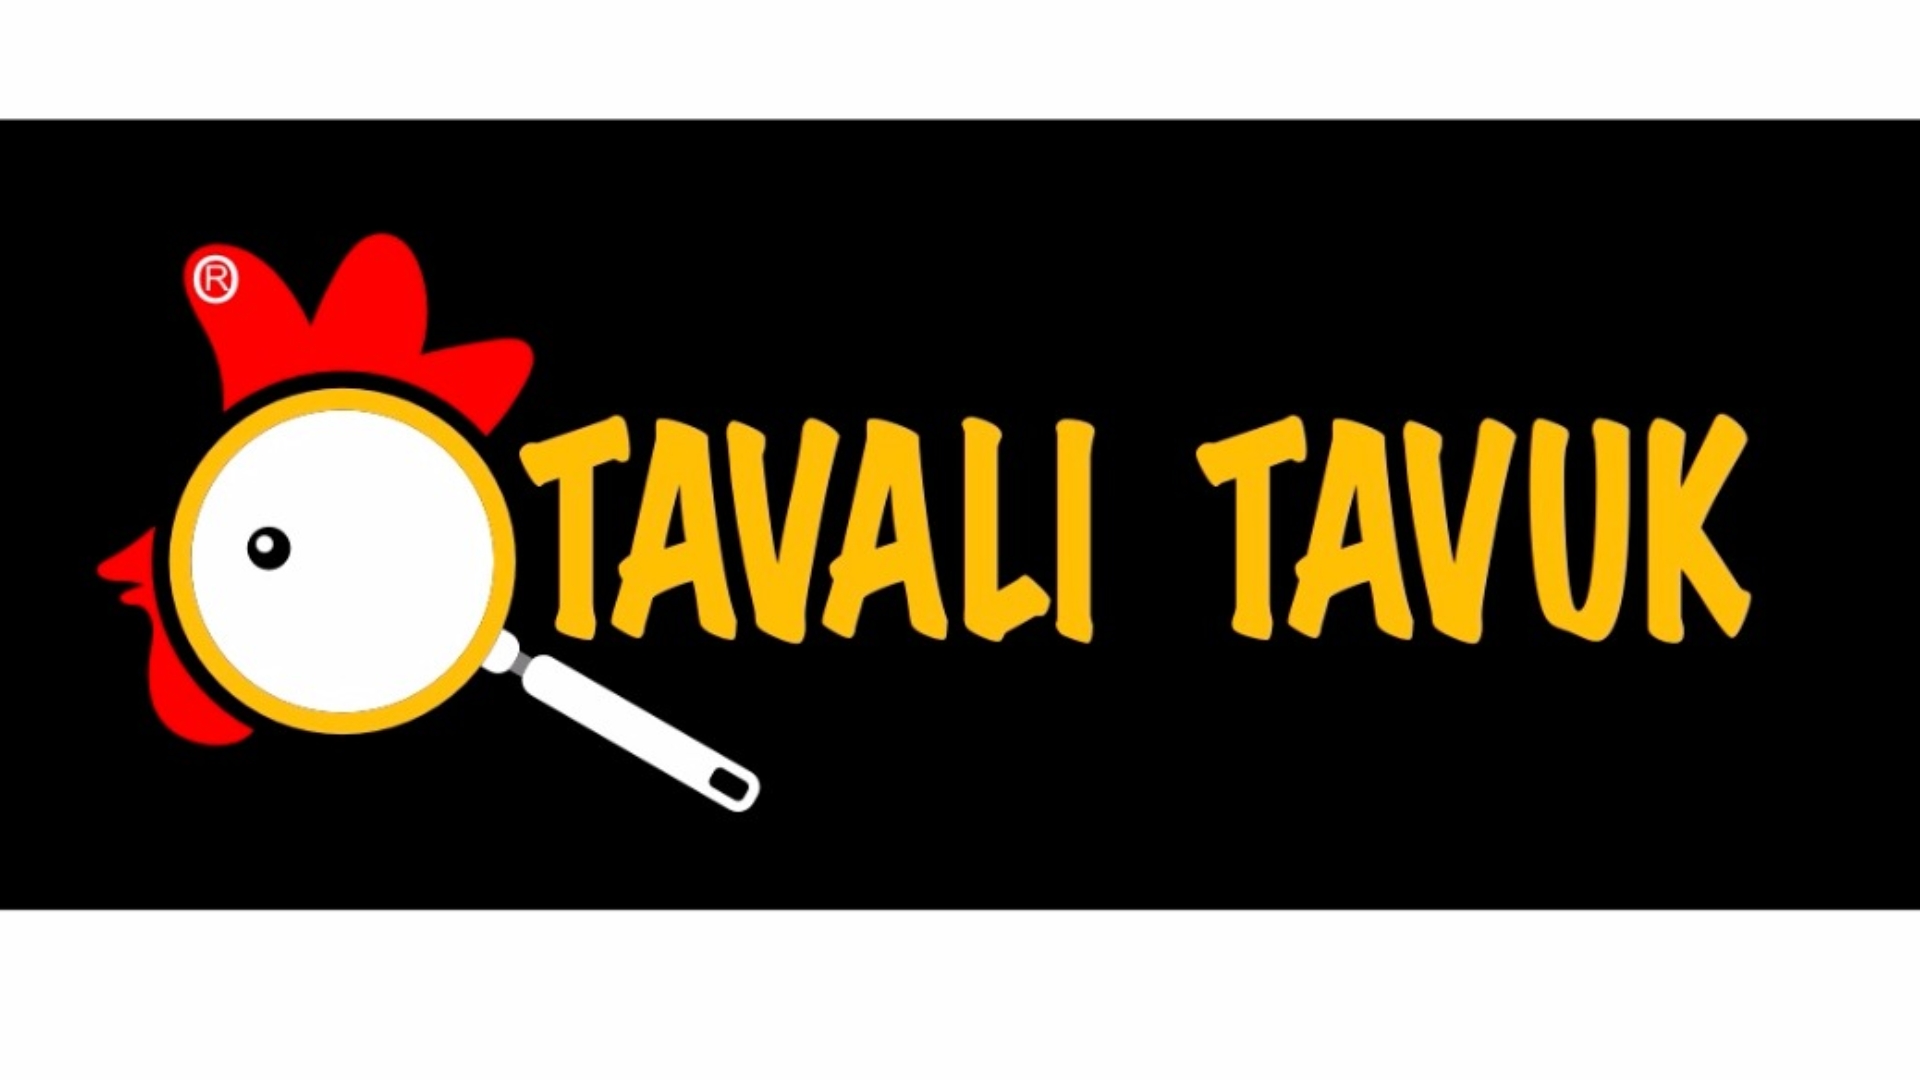 TAVALI TAVUK